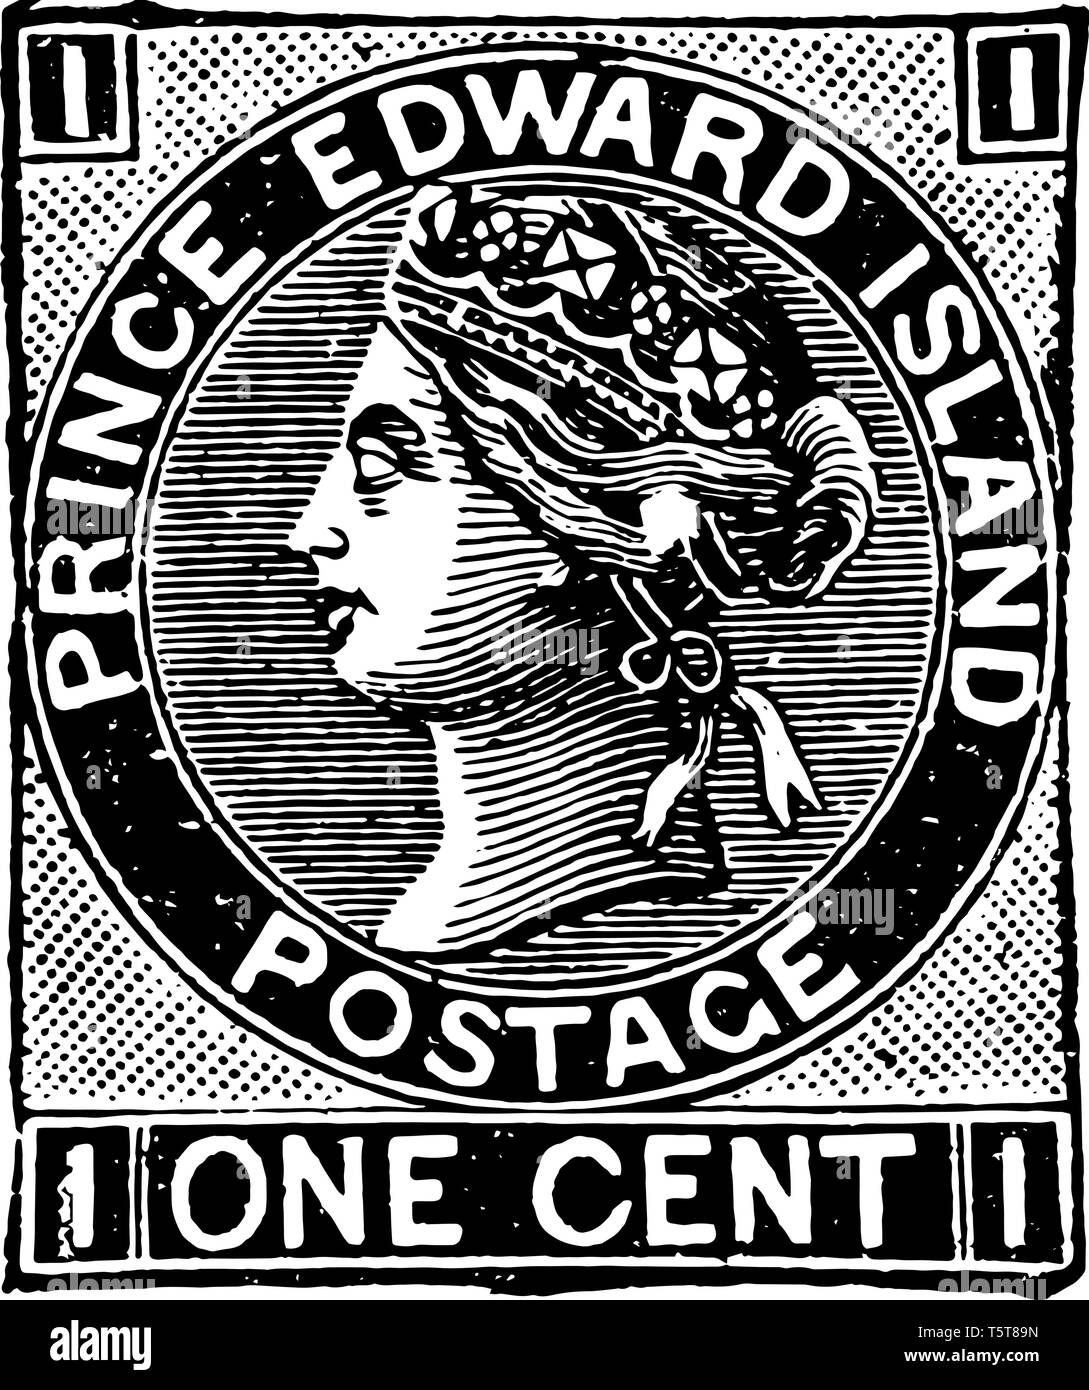 Prince Edward immagine nel centro del cerchio vintage disegno della linea. Illustrazione Vettoriale